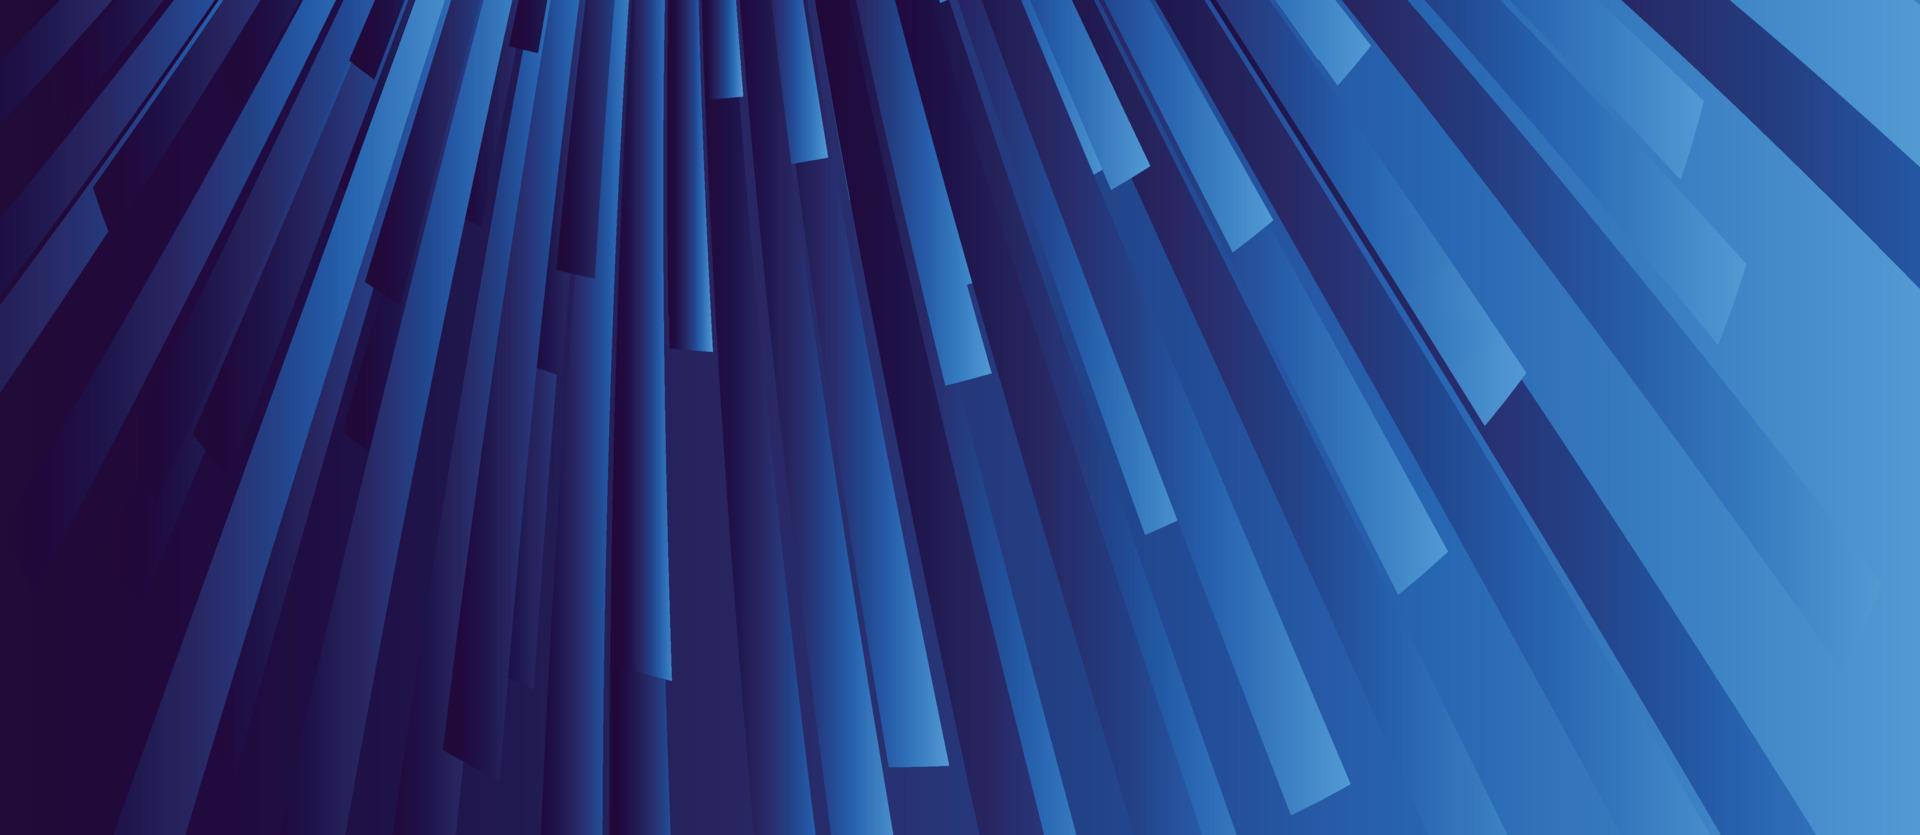 camadas azuis acima umas das outras, modelo de design moderno para o seu negócio, ilustração vetorial com listras e linhas oblíquas vetor